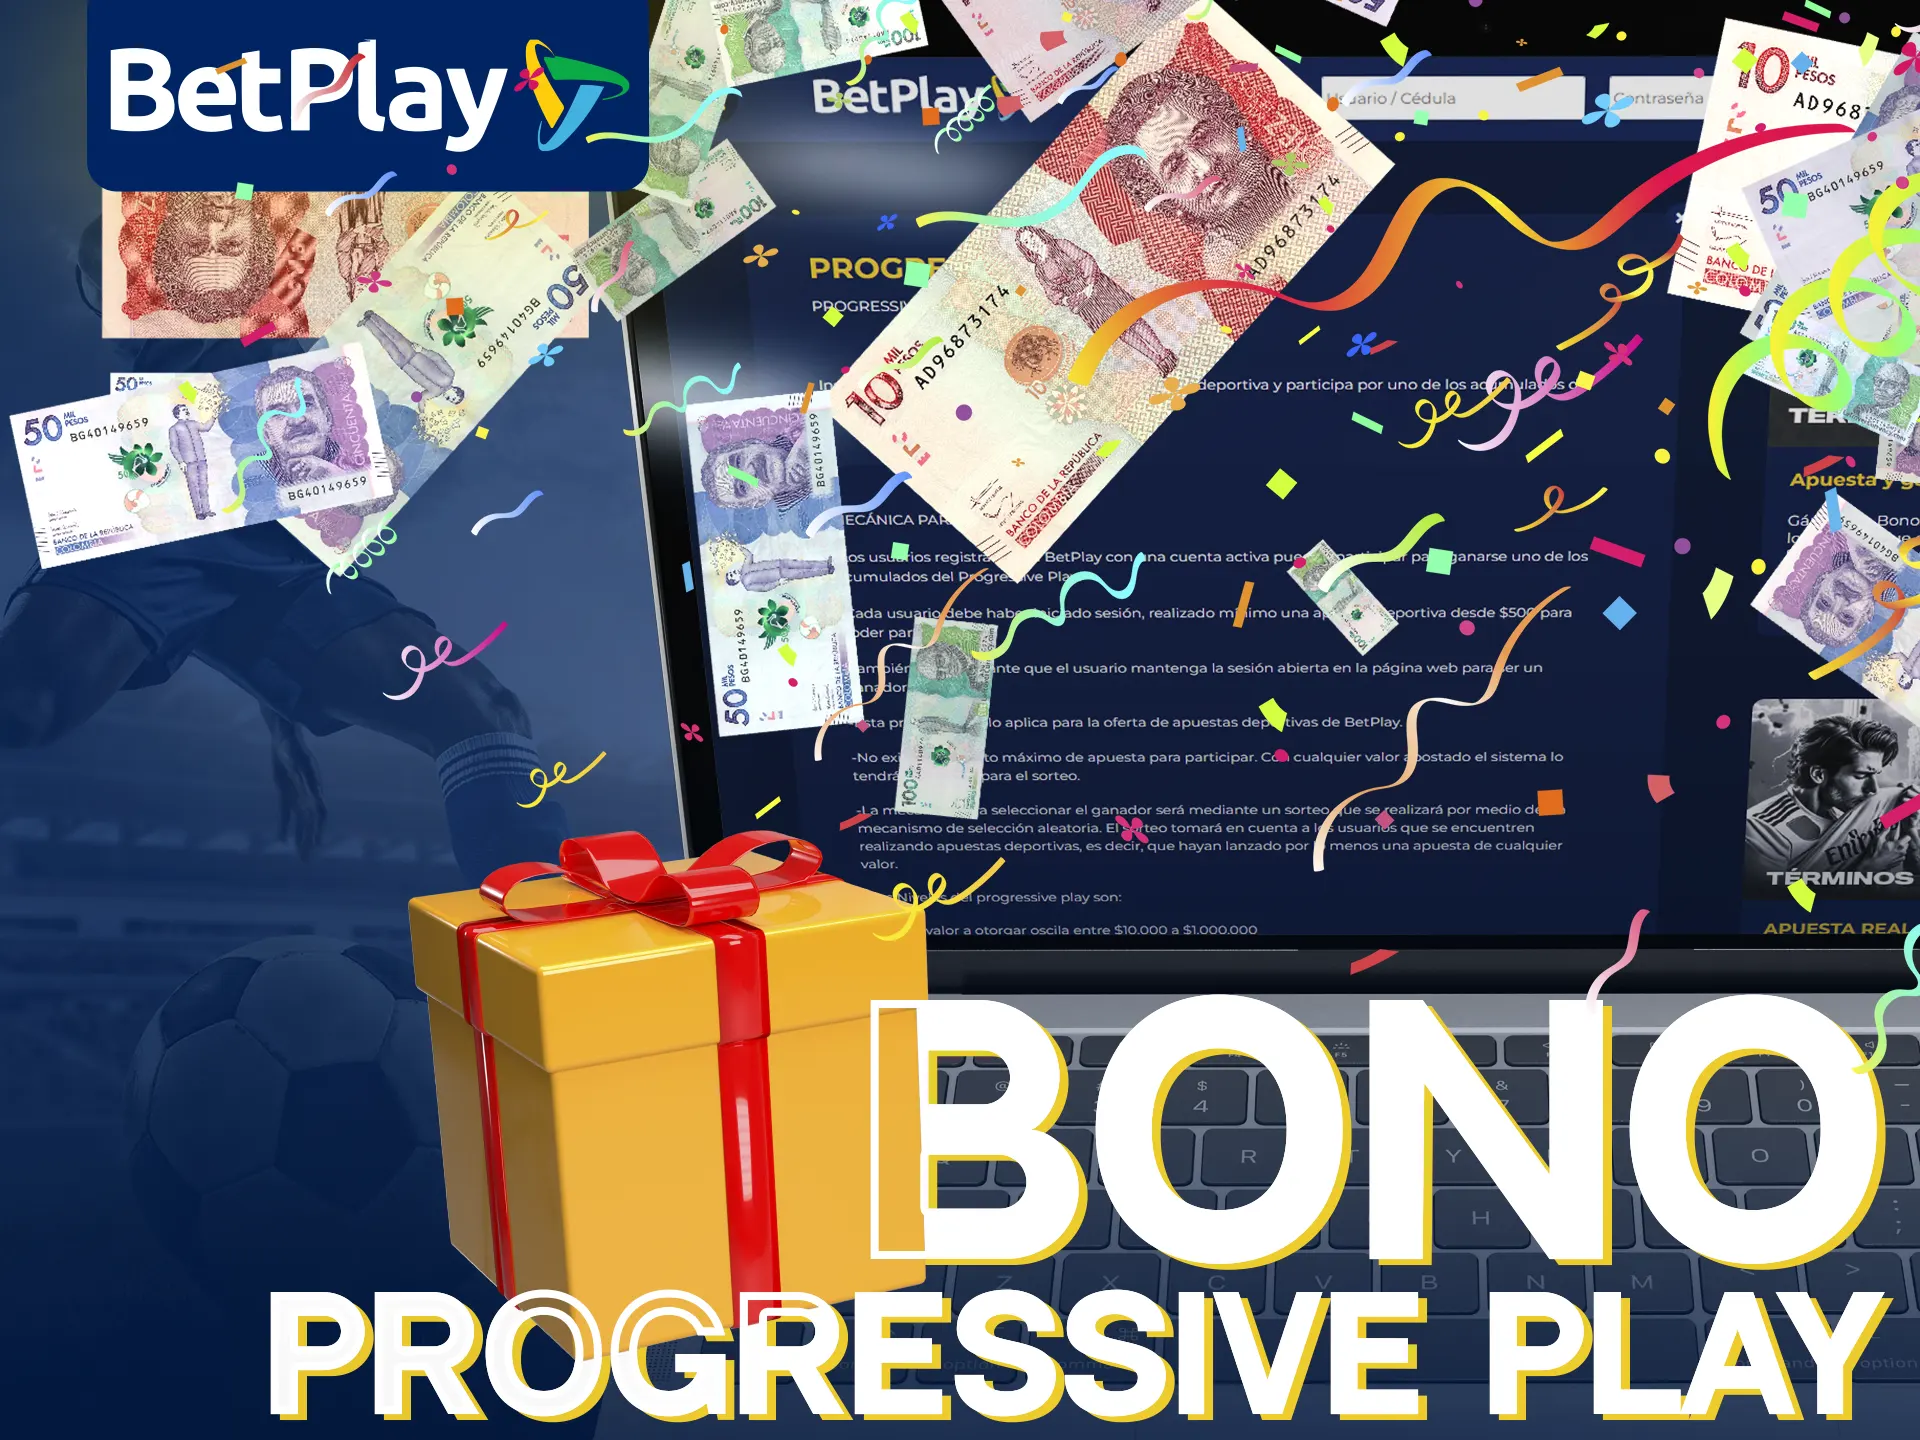 BetPlay ofrece un bono de registro Progressive Play.